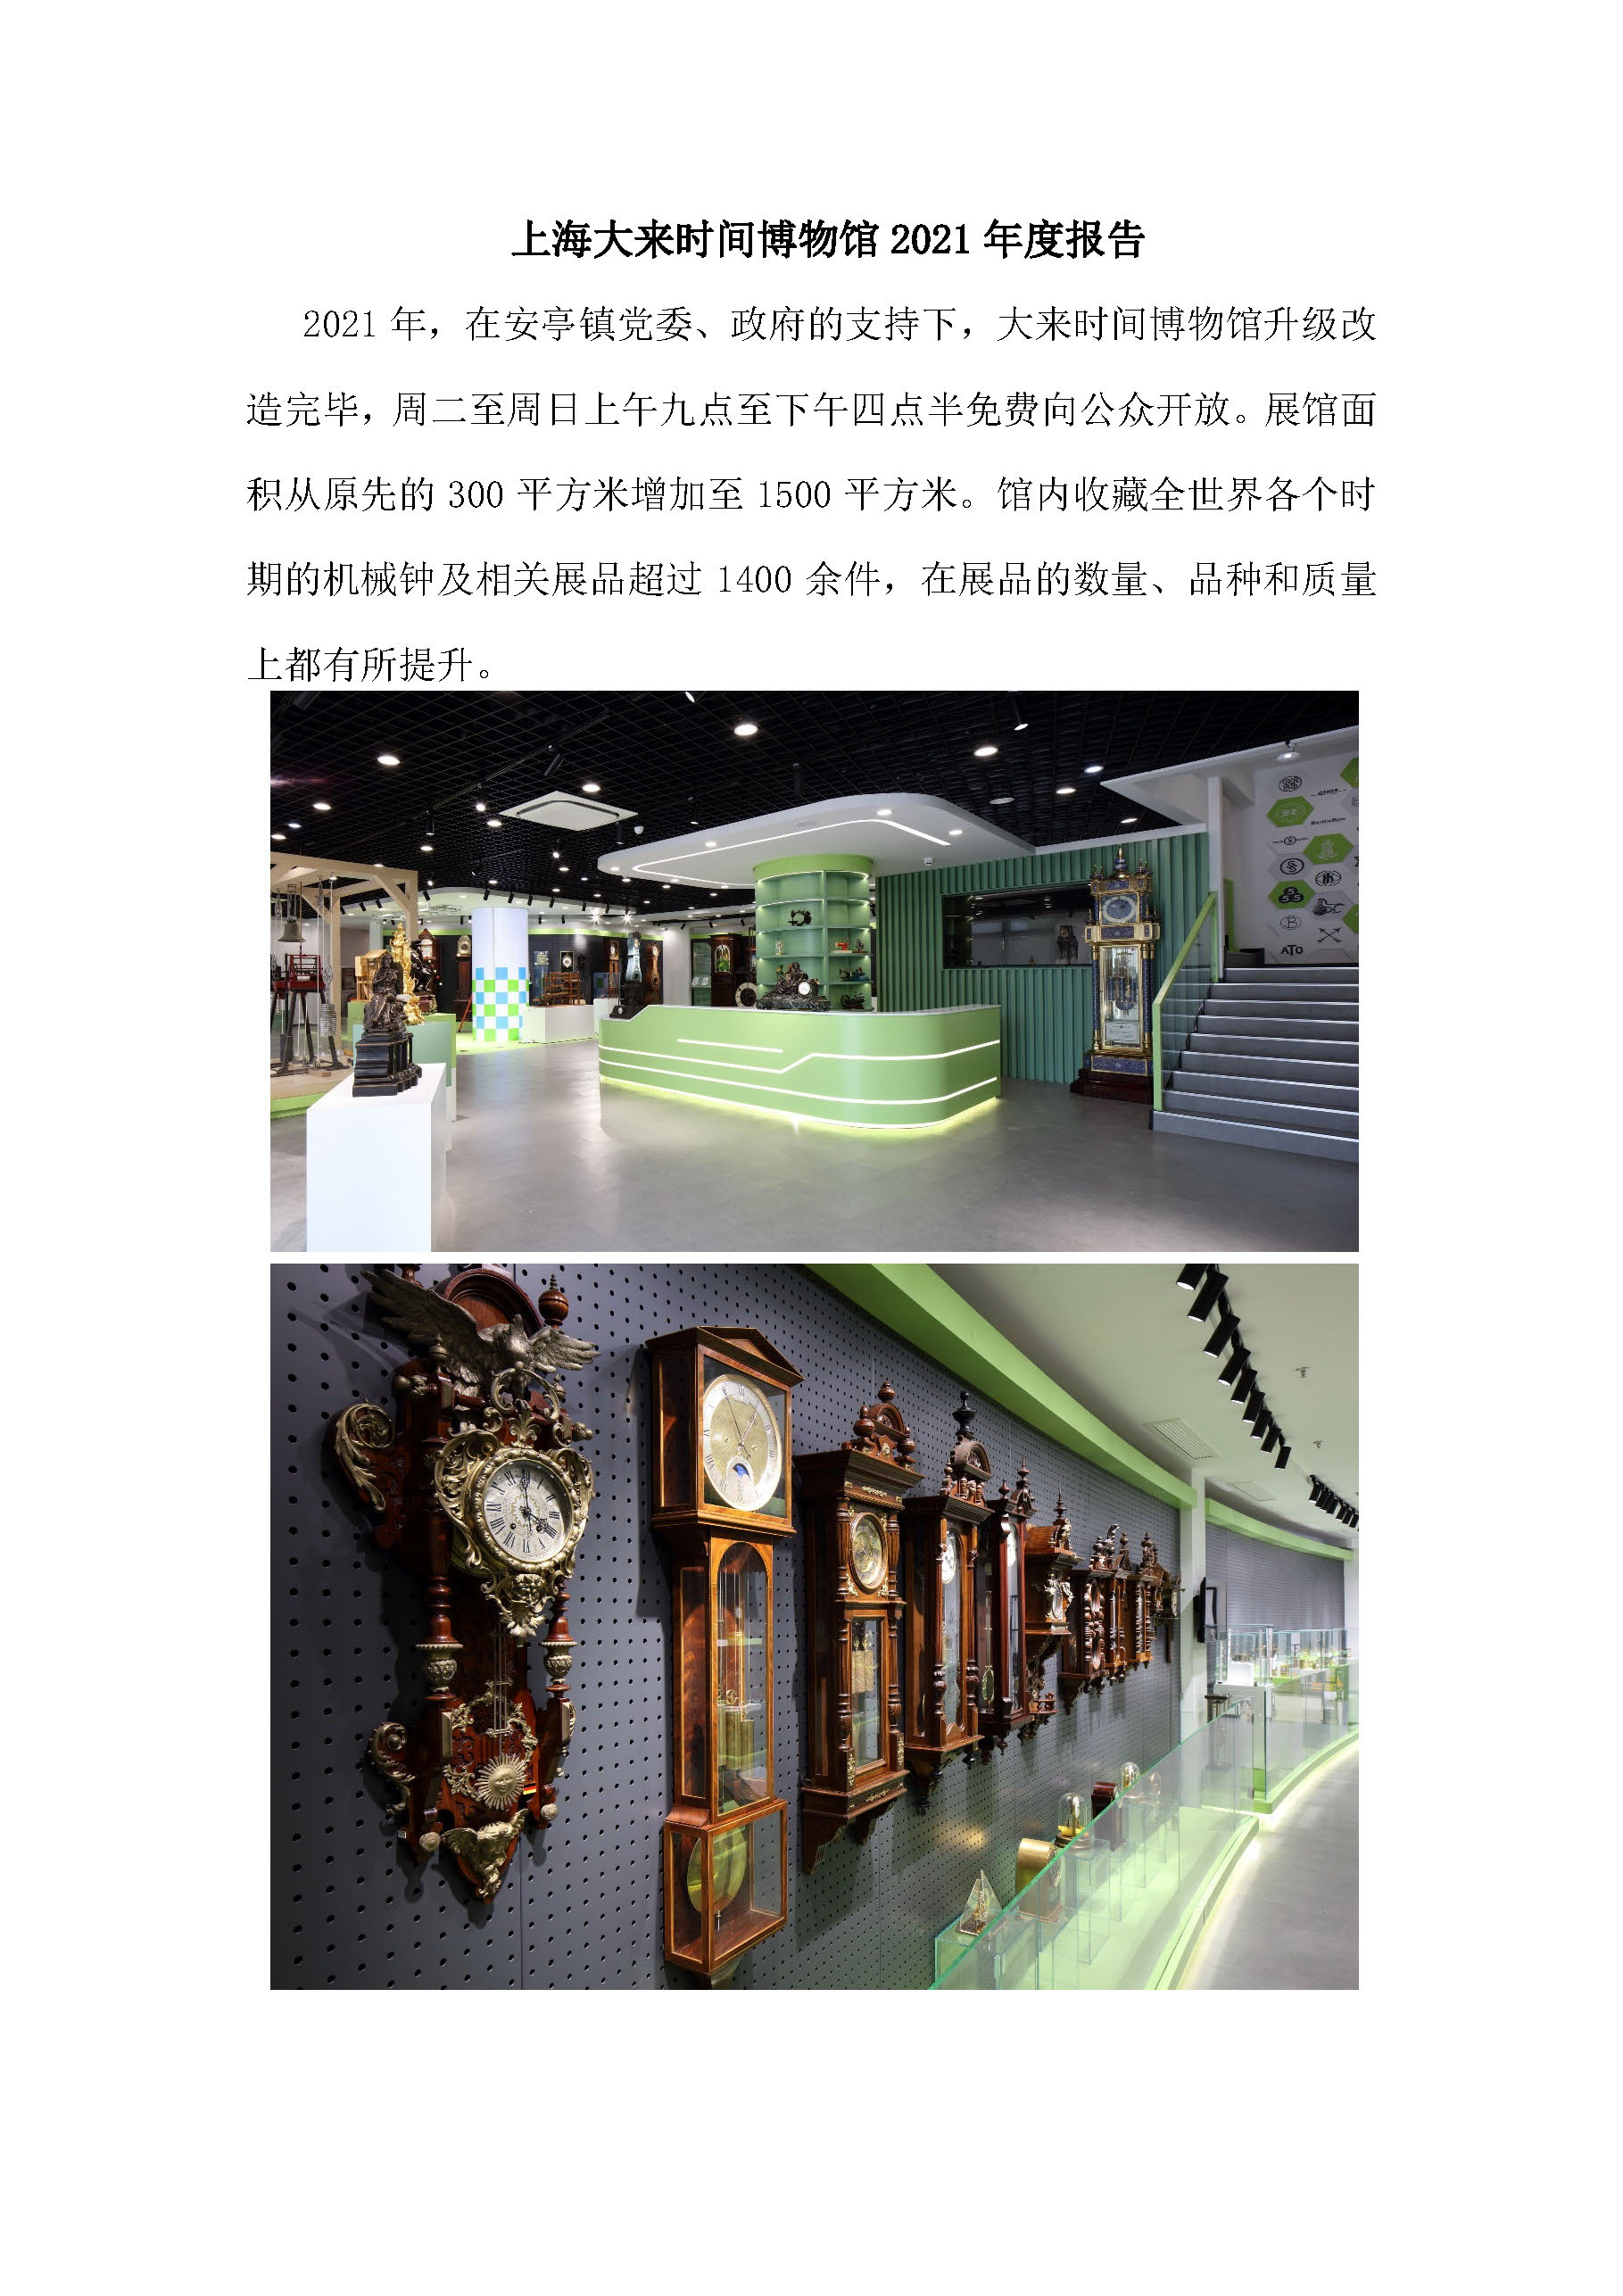 上海大来时间博物馆2021年度报告_页面_1.jpg